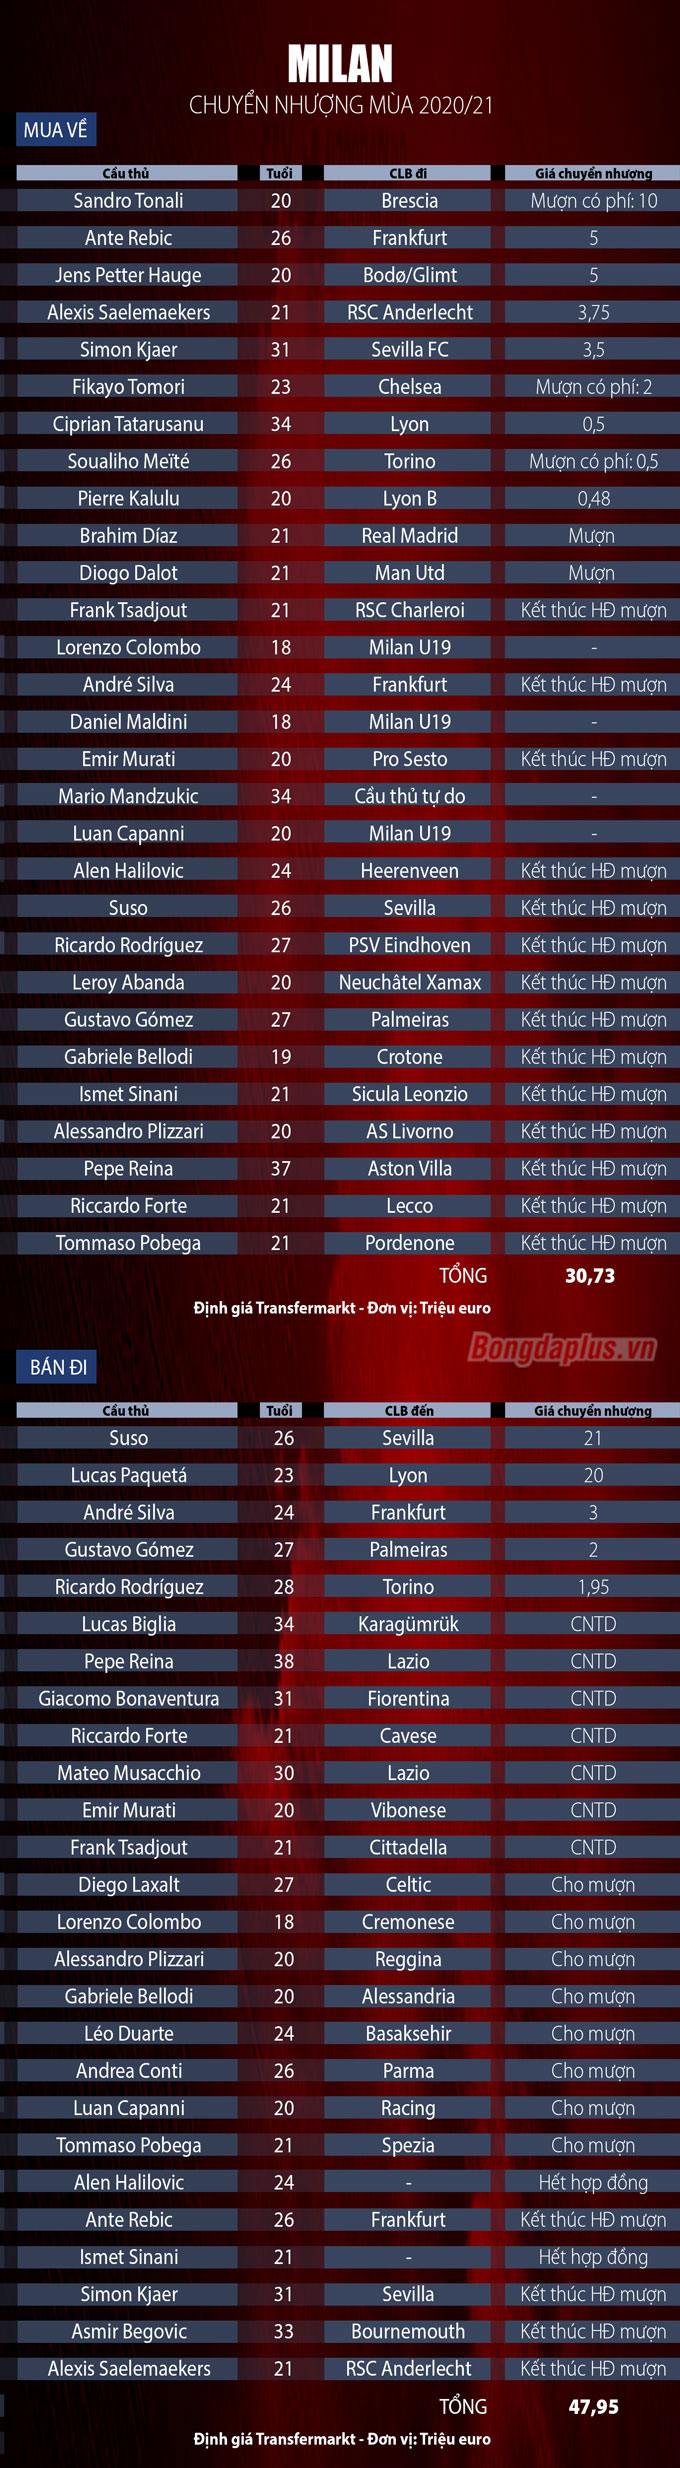 Danh sách chuyển nhượng Milan mùa 2020/21